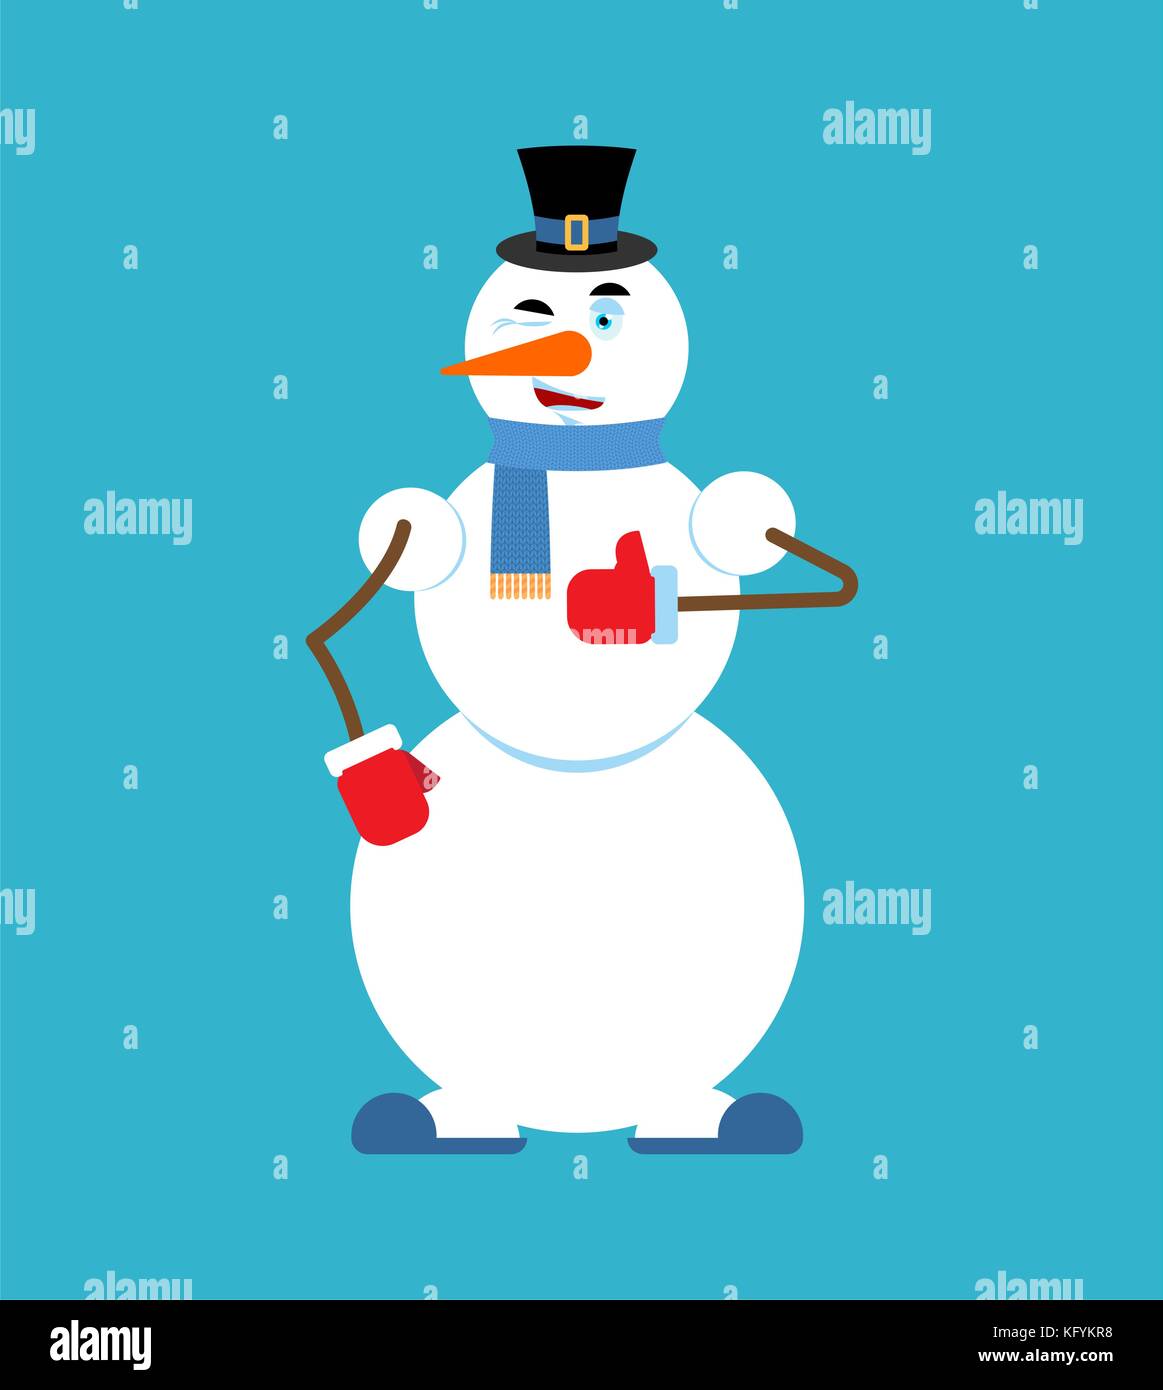 Schneemann Daumen oben winks Emoji. Neues Jahr und Weihnachten Vector Illustration Stock Vektor